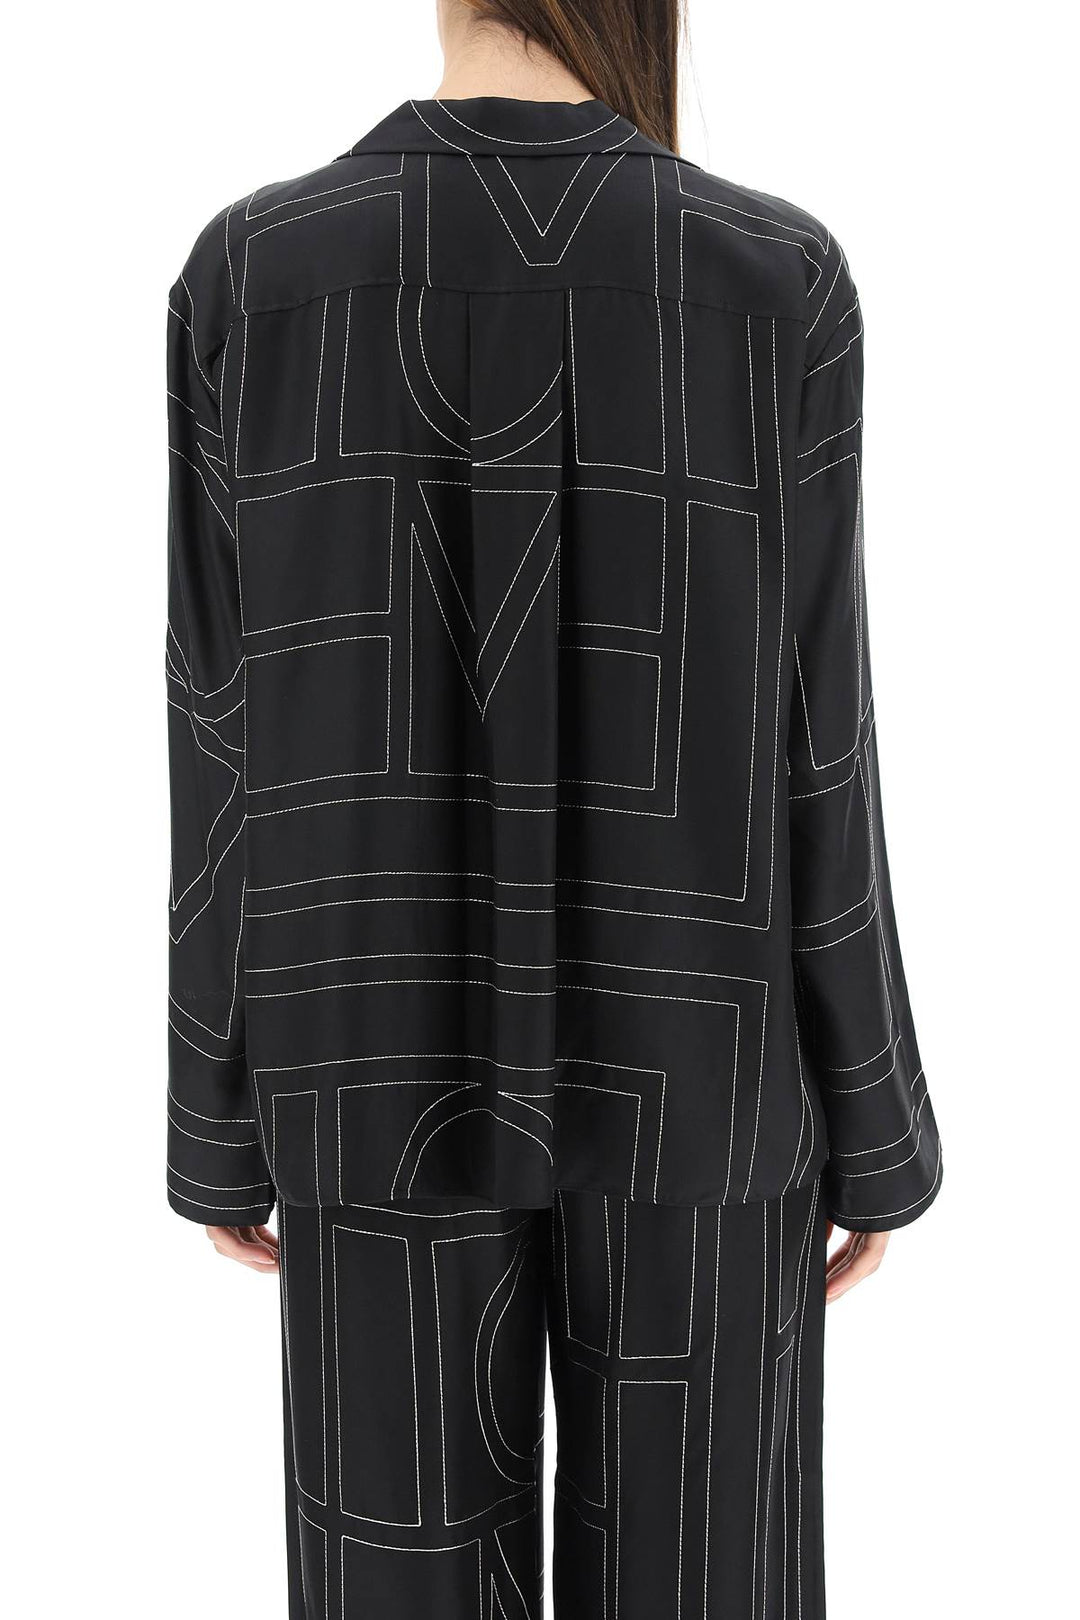 Toteme Monogram Silk Pajama Top   Black